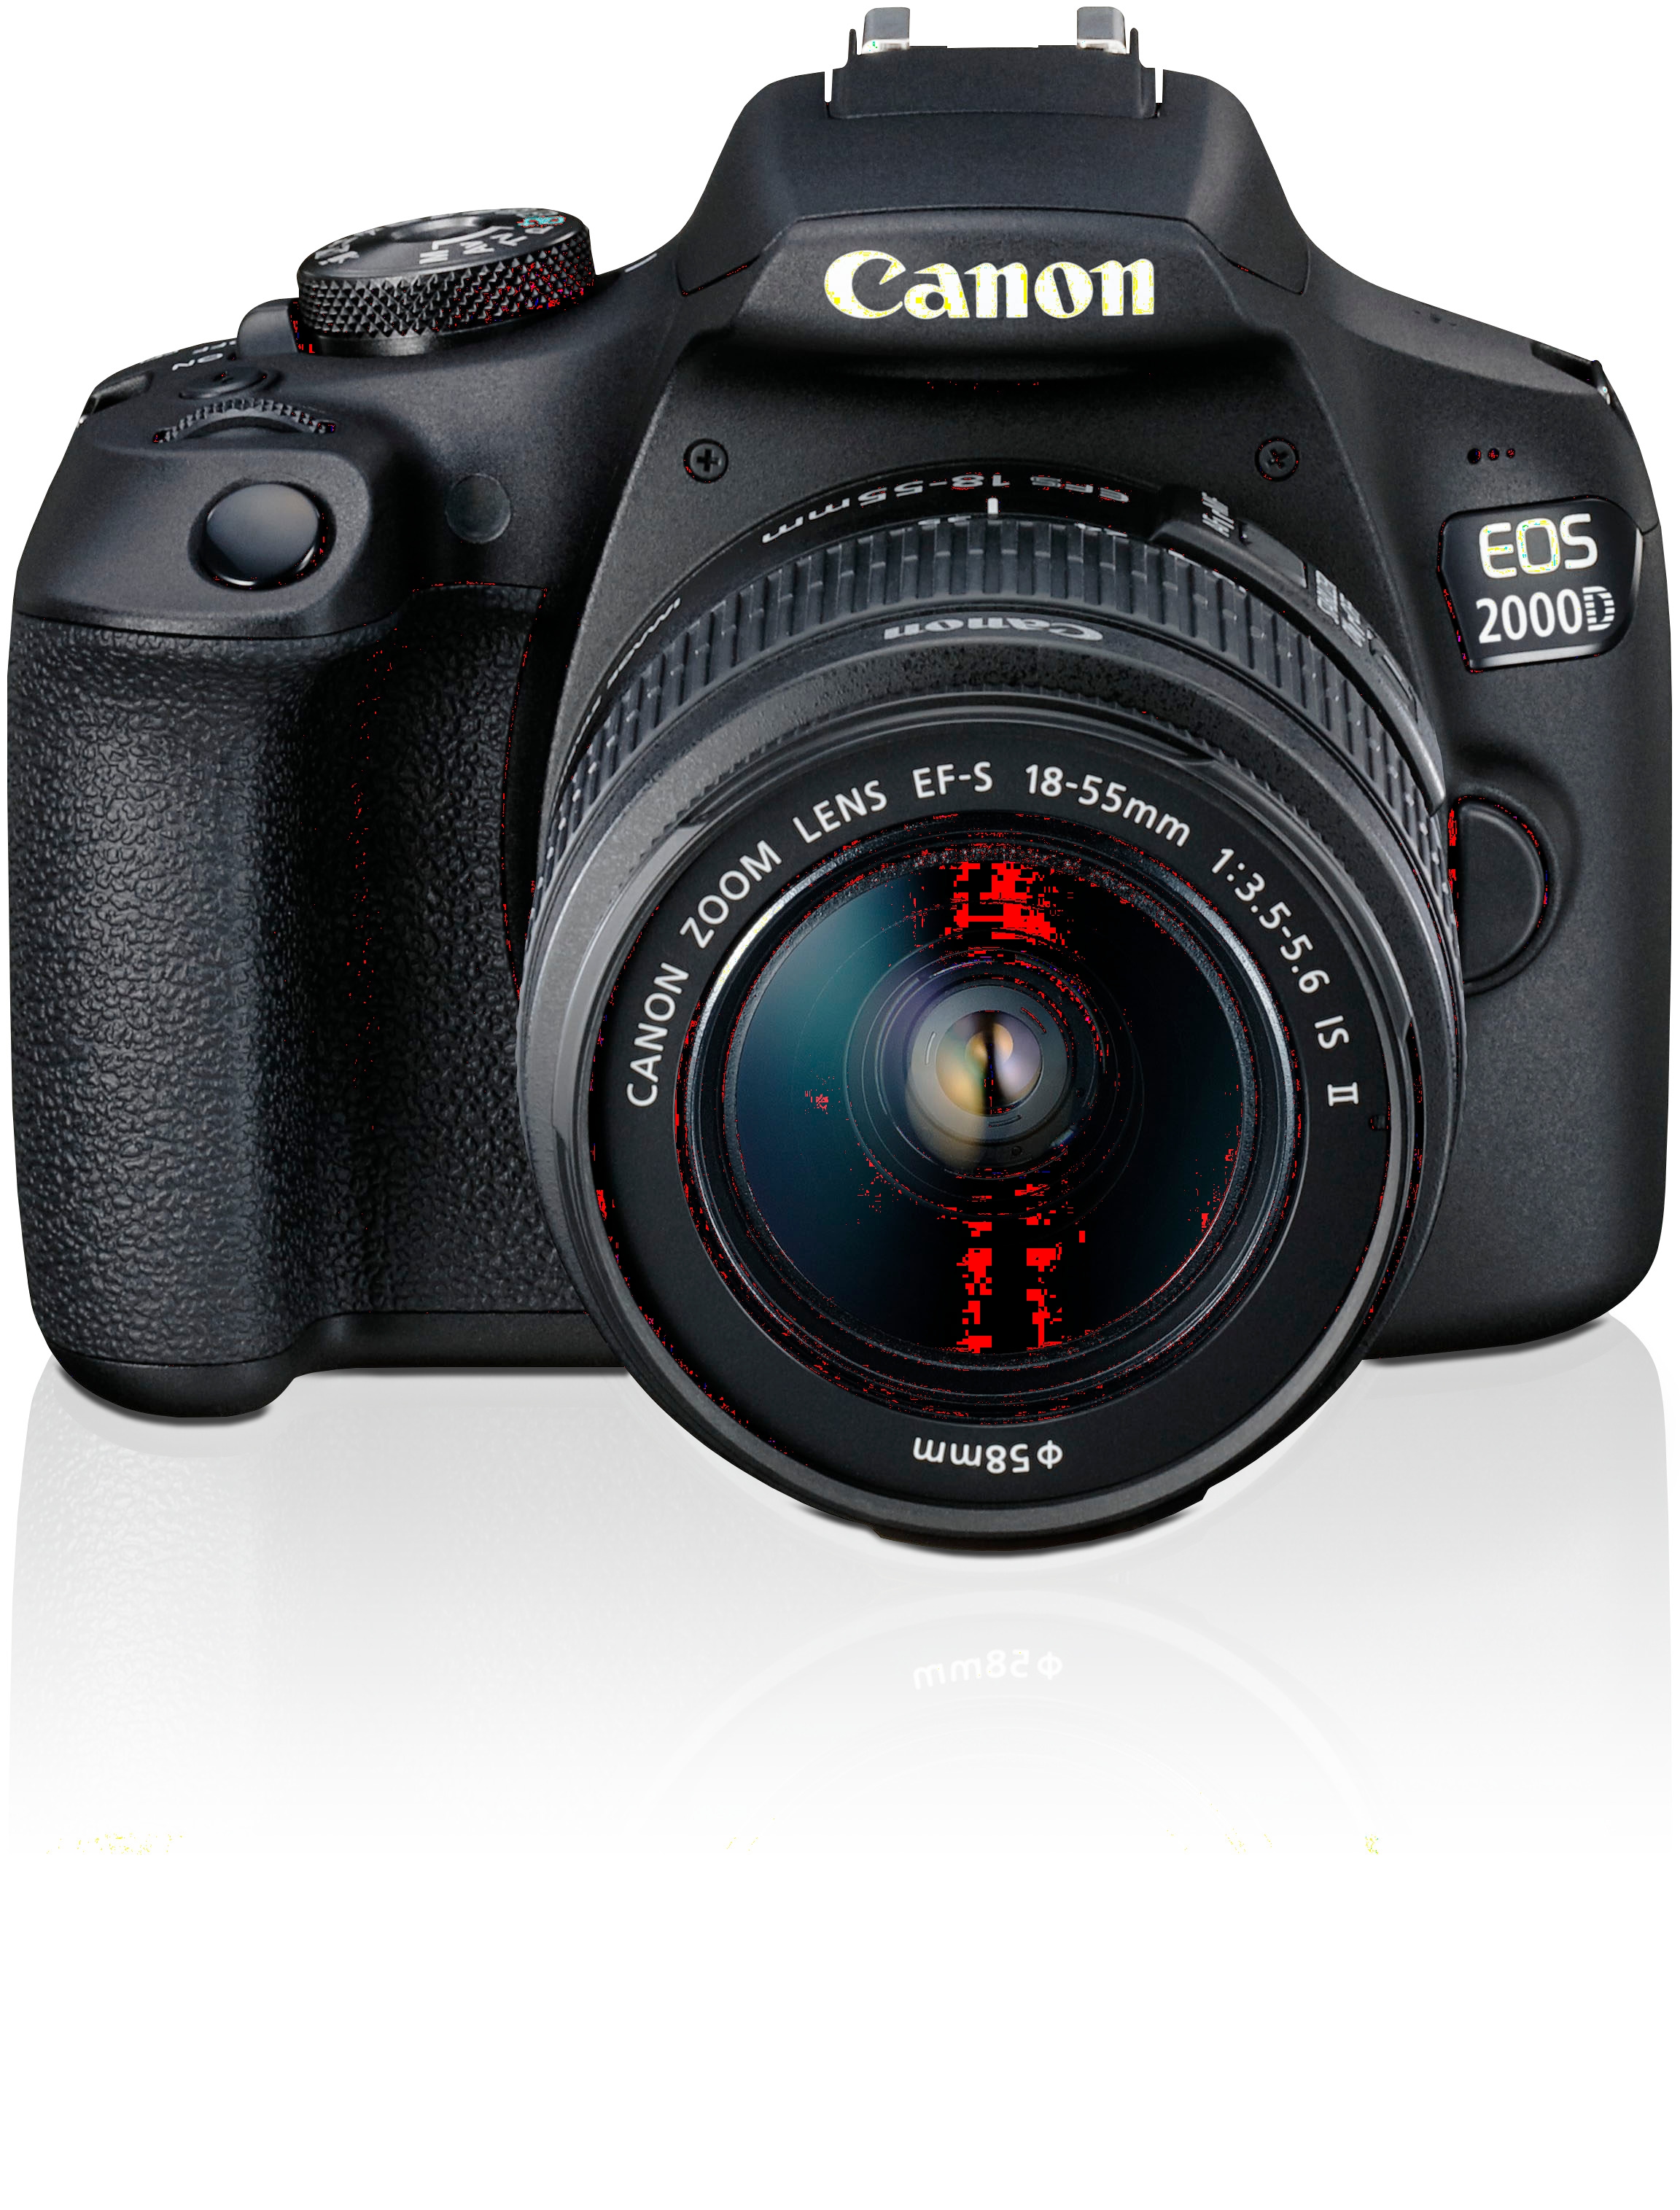 24,1 NFC- Canon »EOS II Kit«, Spiegelreflexkamera 18-55 EF-S EF-S IS MP, WLAN Objektiv (Wi-Fi), 2000D bei inkl. II, 18-55 IS